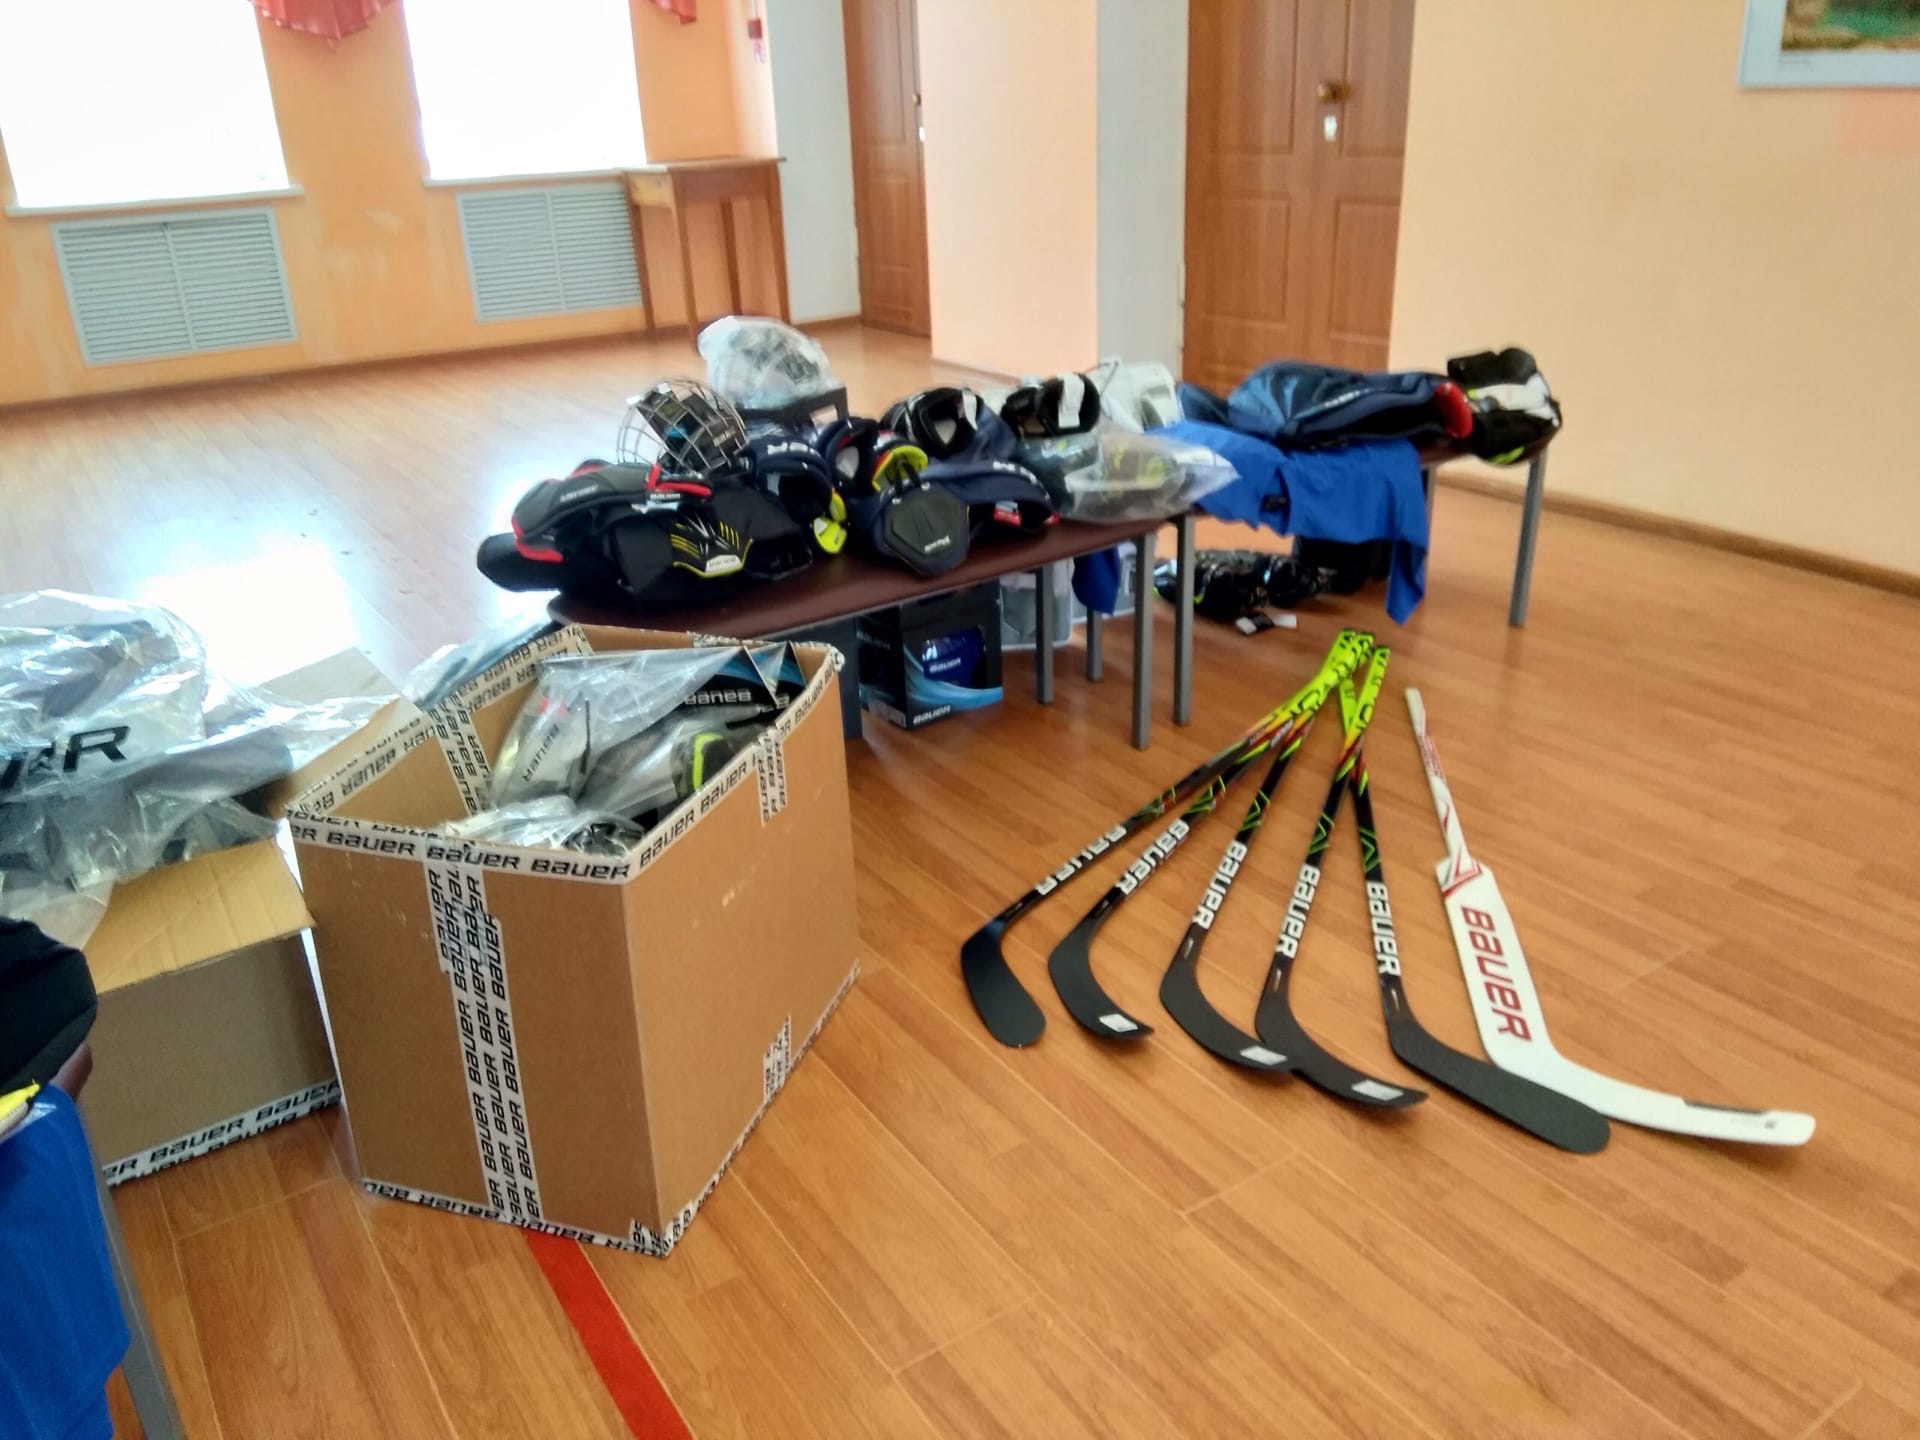 Учащиеся школы поселка Борок получили в подарок от Дмитрия Миронова комплекты настоящей хоккейной экипировки